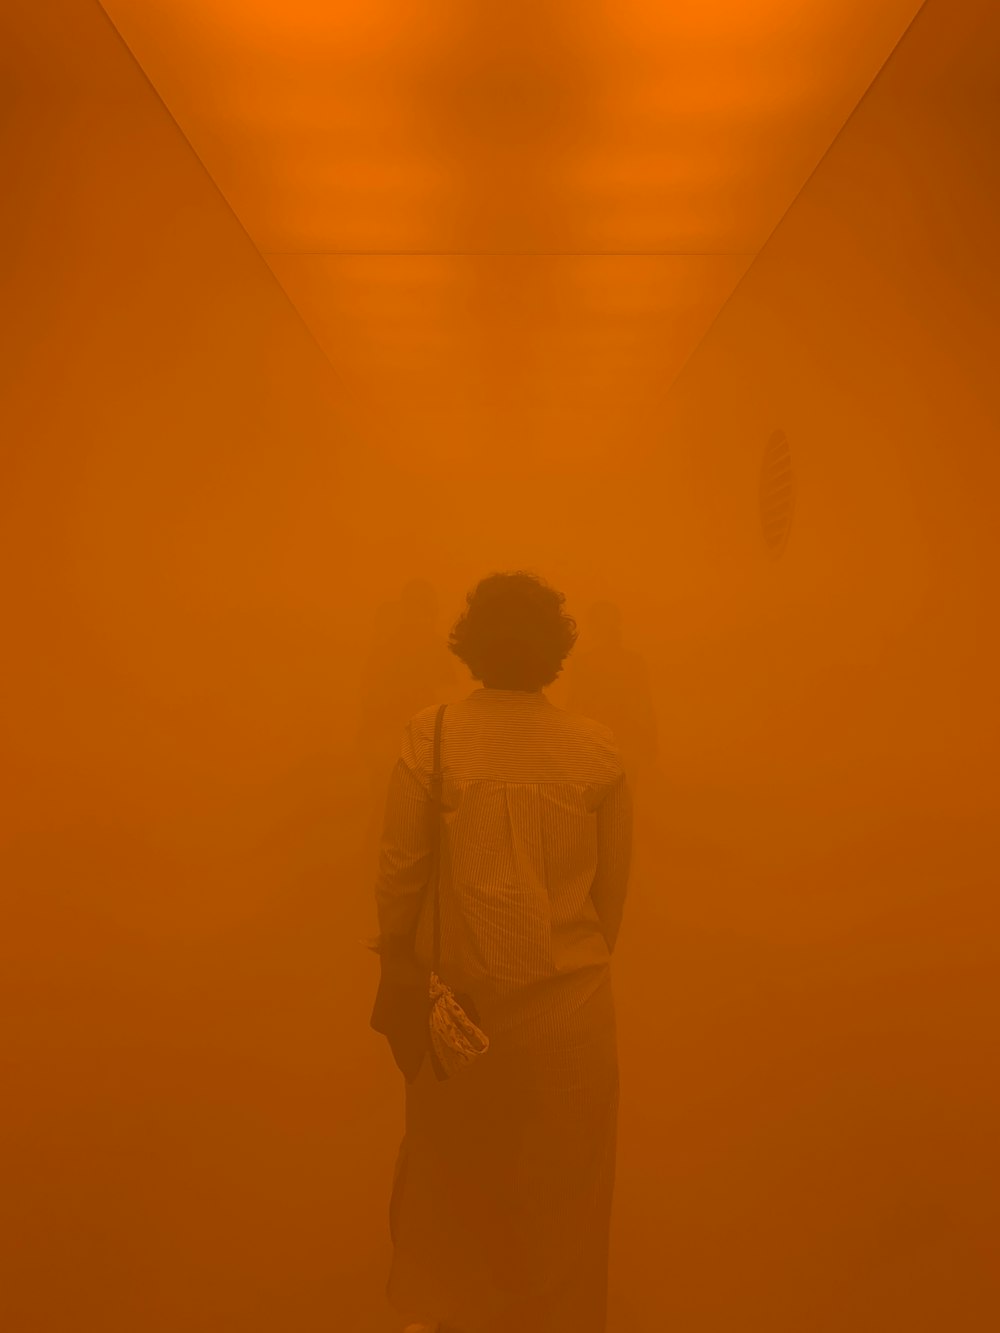 Fotografía borrosa de una persona dentro de una habitación naranja